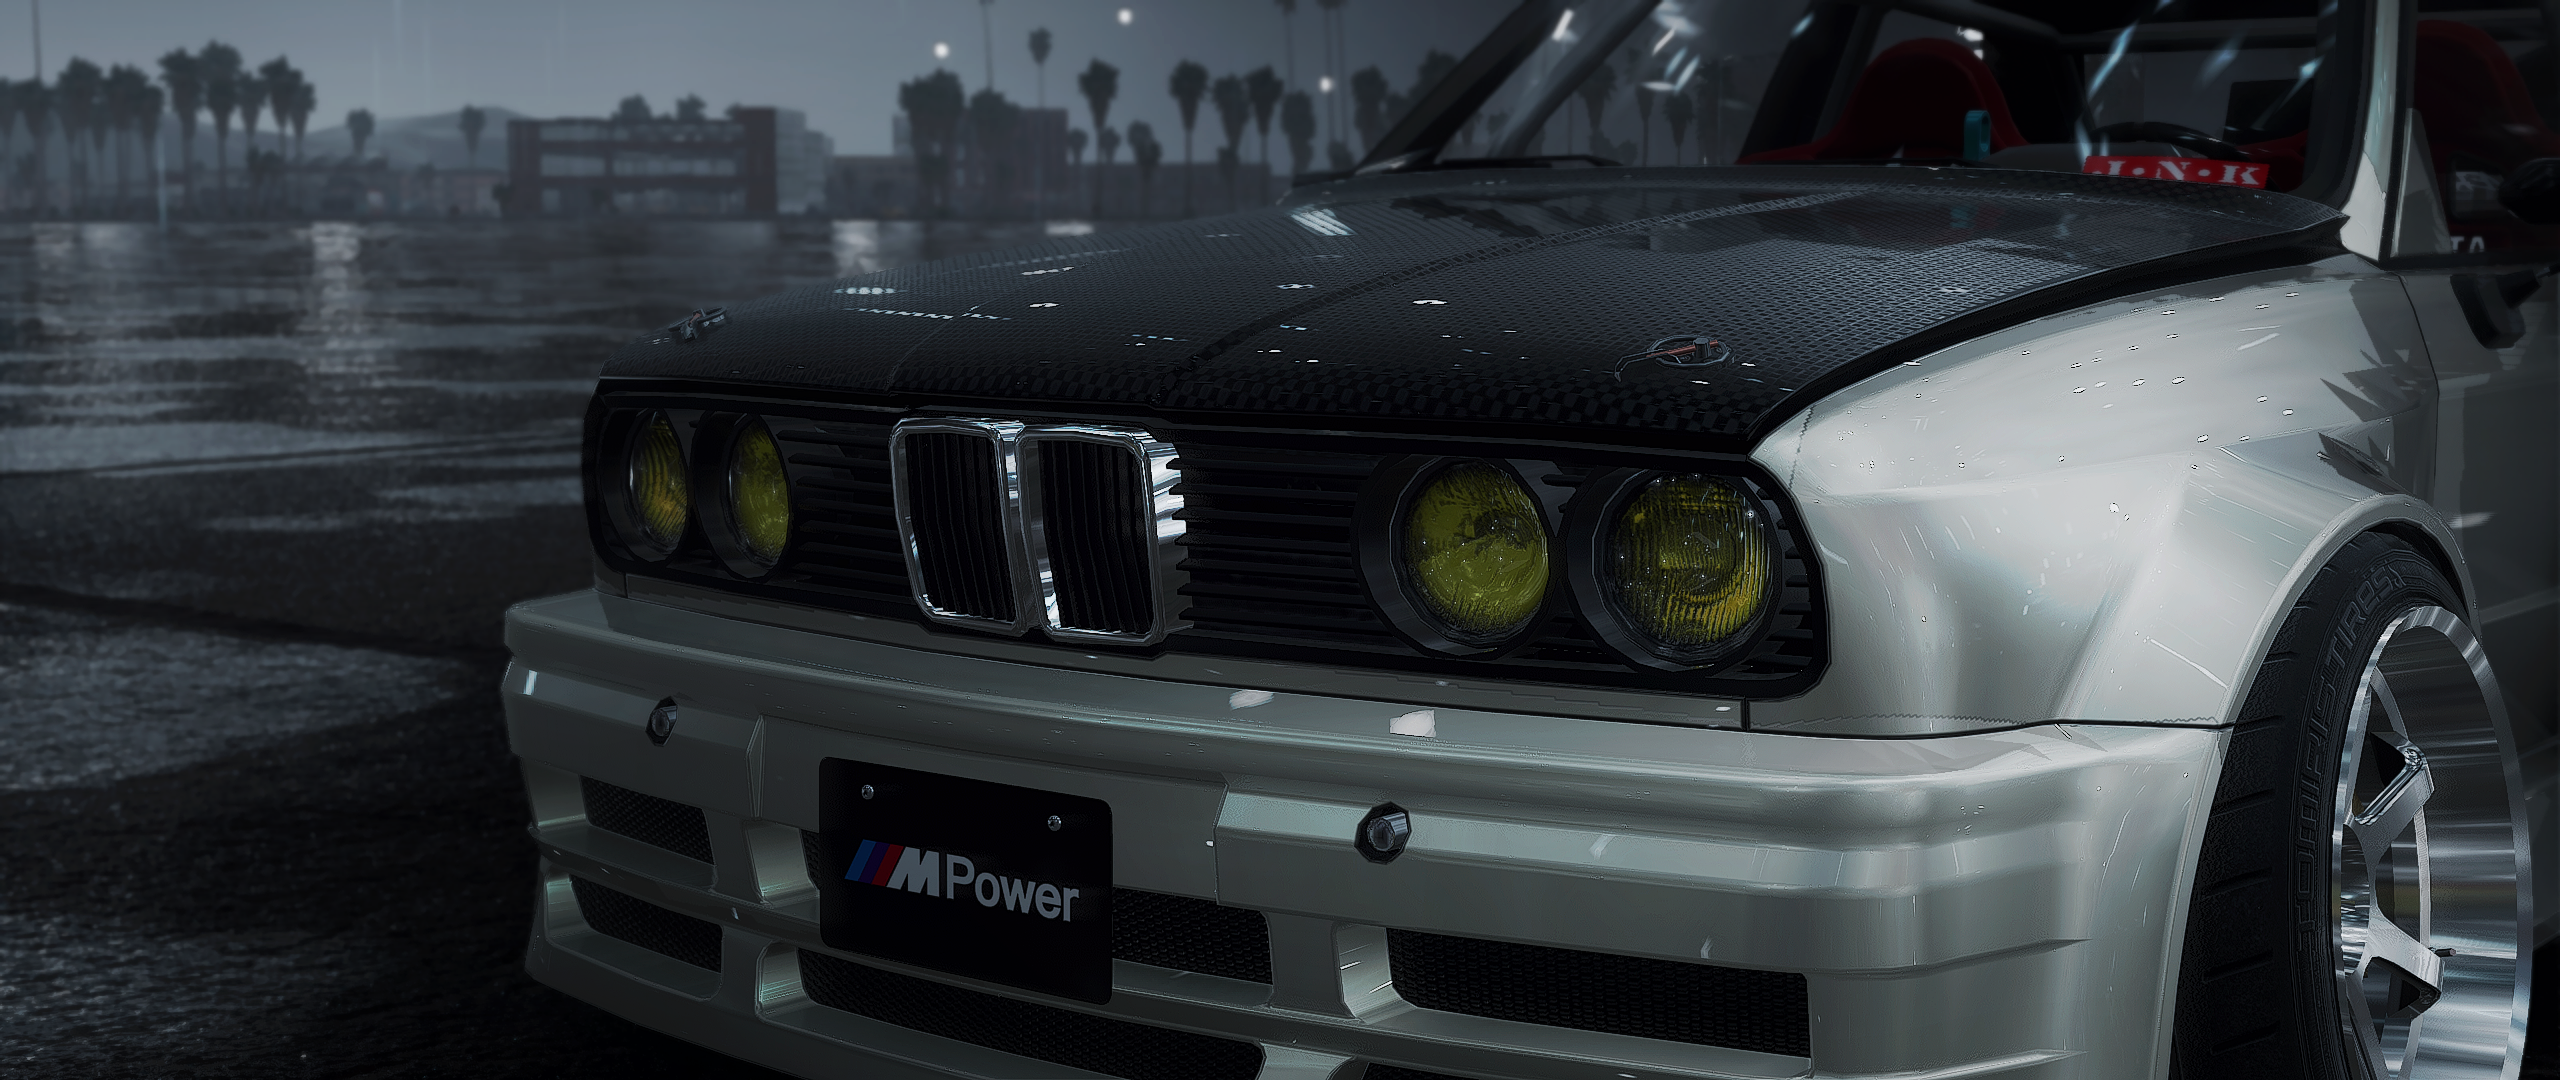 CarX Drift Racing Online Drift Drift Cars BMW BMW E30 Car Video Games 2560x1080